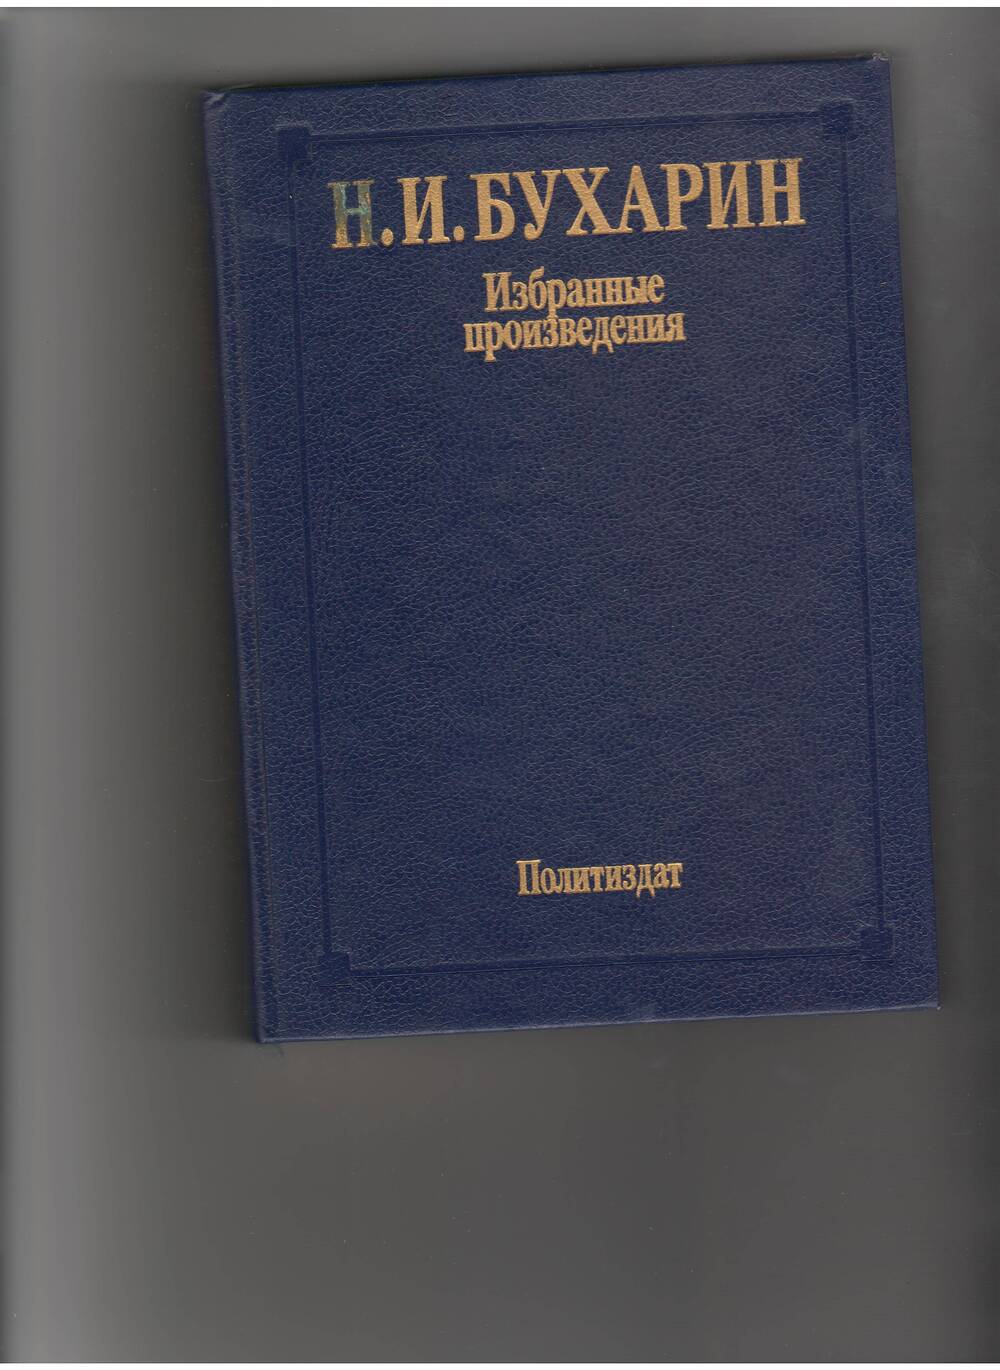 книга Бухарин Н. Избранные произведения. - М: Политлит,1988.